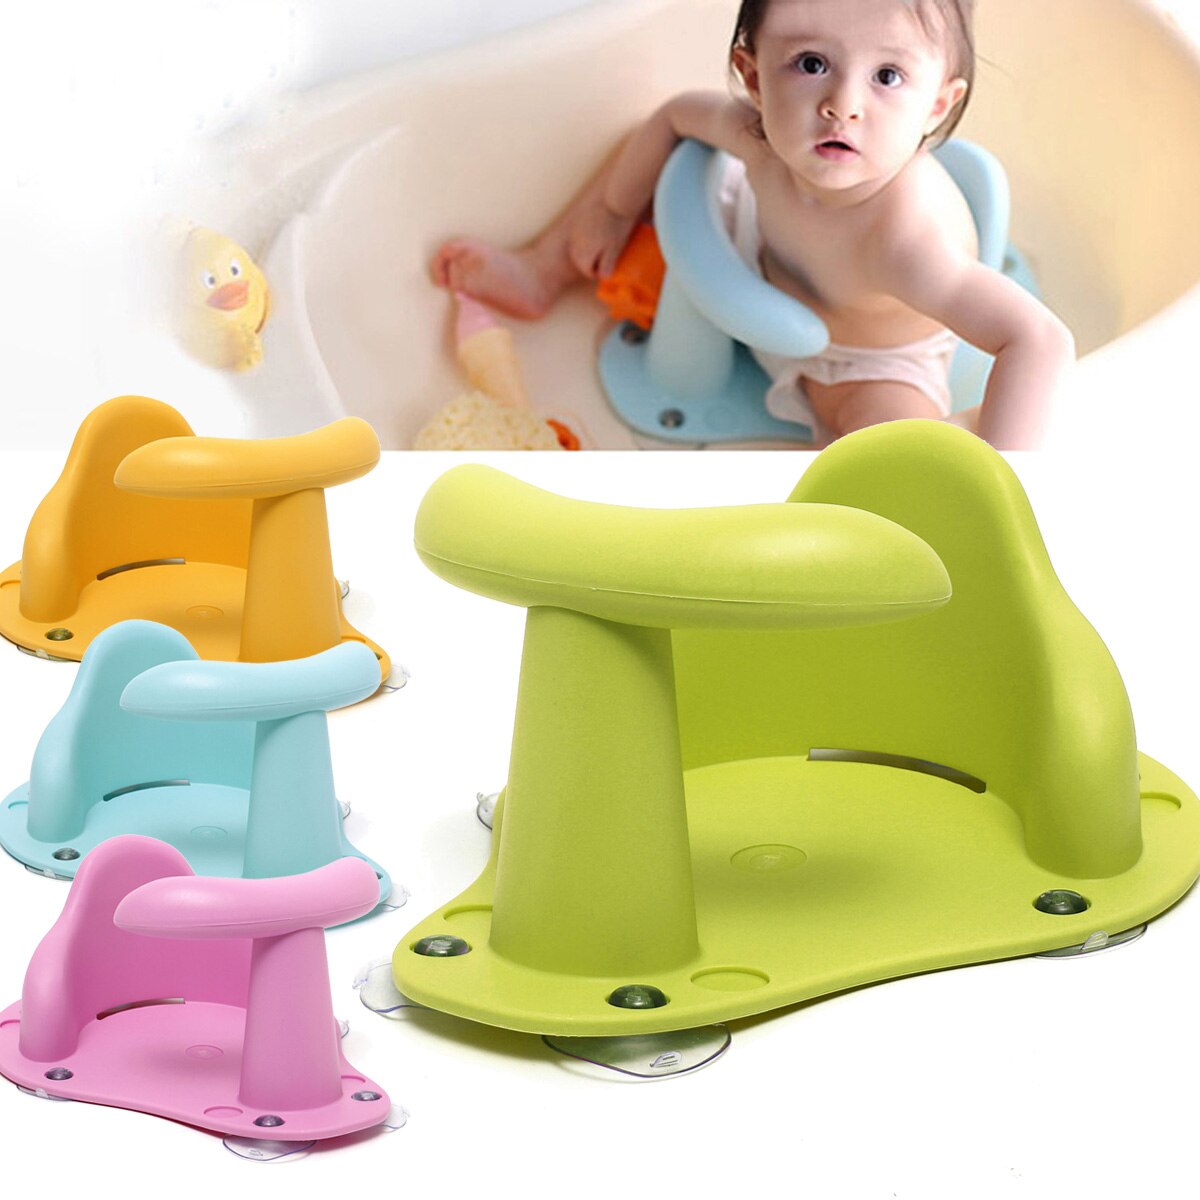 Badekar sæde baby badekar pad mat stol sikkerhed sikkerhed anti slip baby pleje børn badesæde vask legetøj badeværelse tilbehør